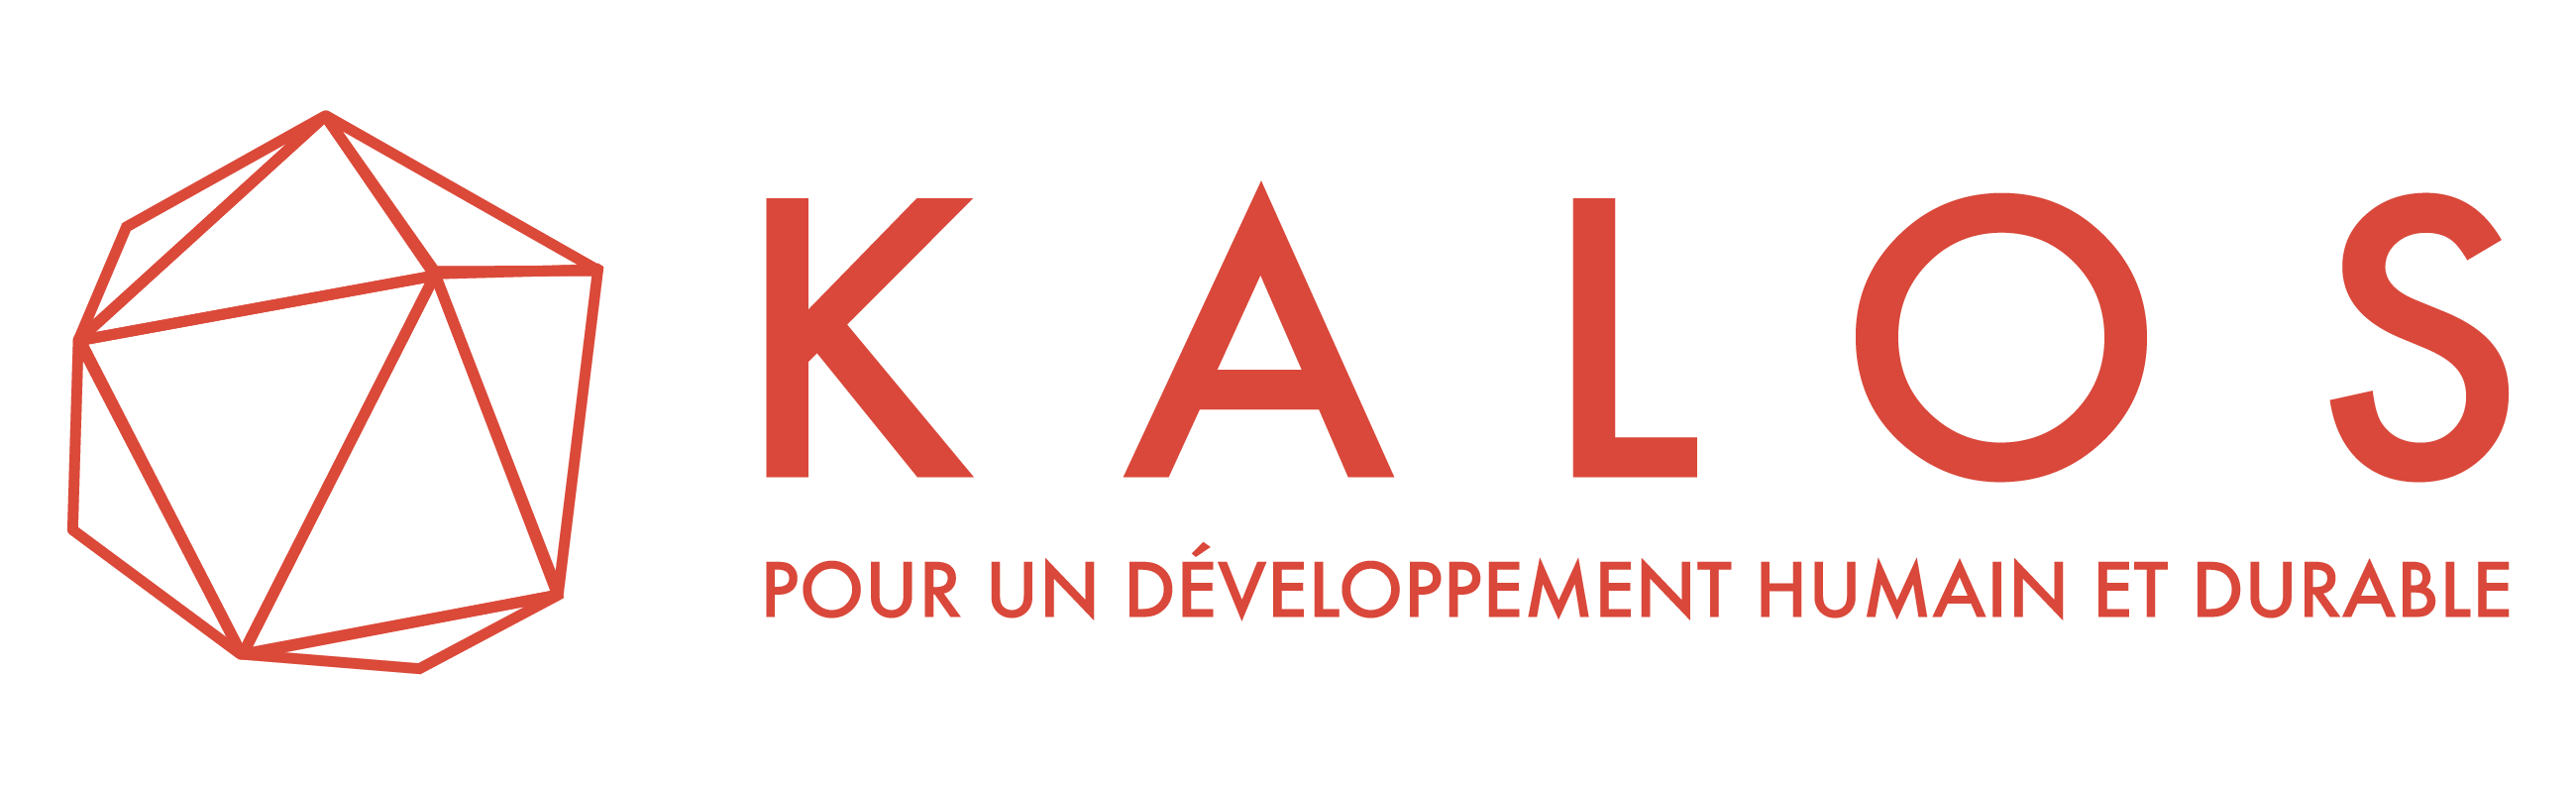 Kalos – Pour un développement humain et durable